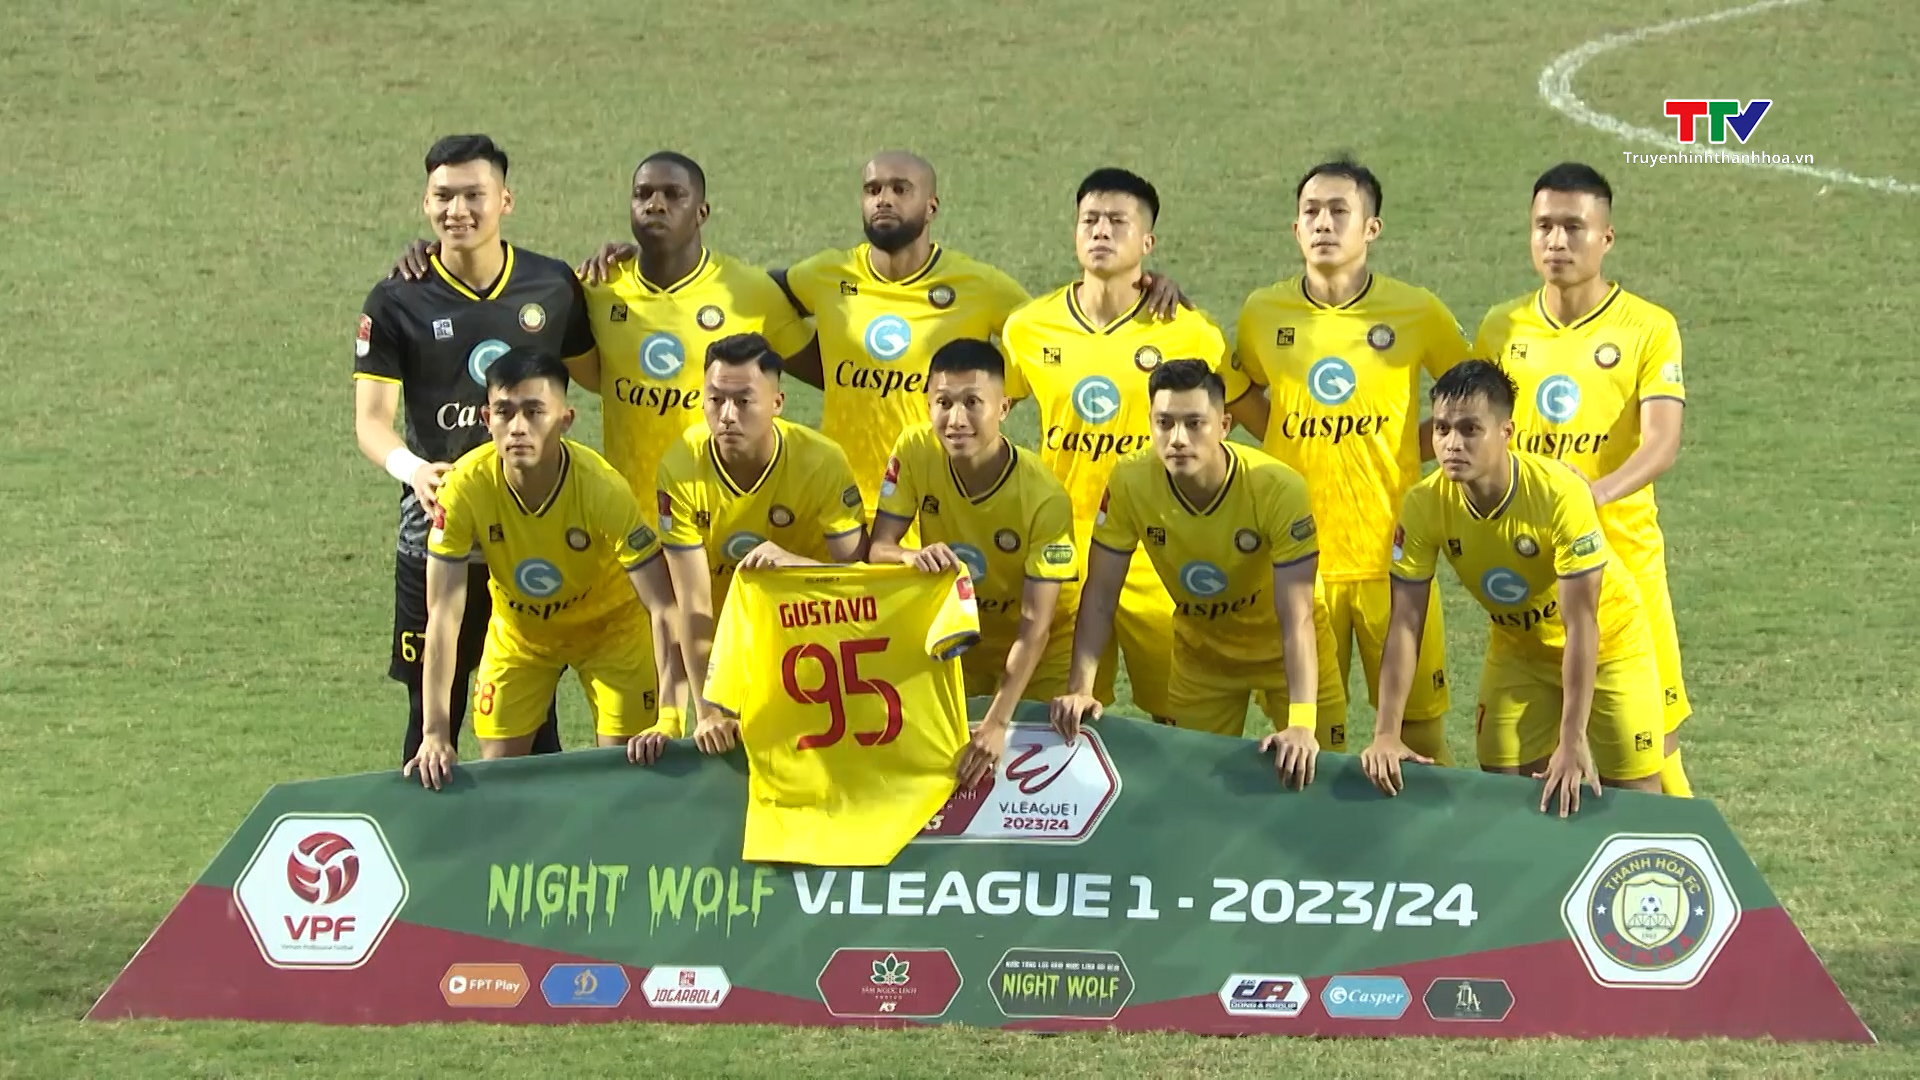 Hàng nghìn khán giả đến sân trong ngày Câu lạc bộ Đông Á Thanh Hóa chiến thắng Hà Nội tại vòng 9 V.League- Ảnh 1.